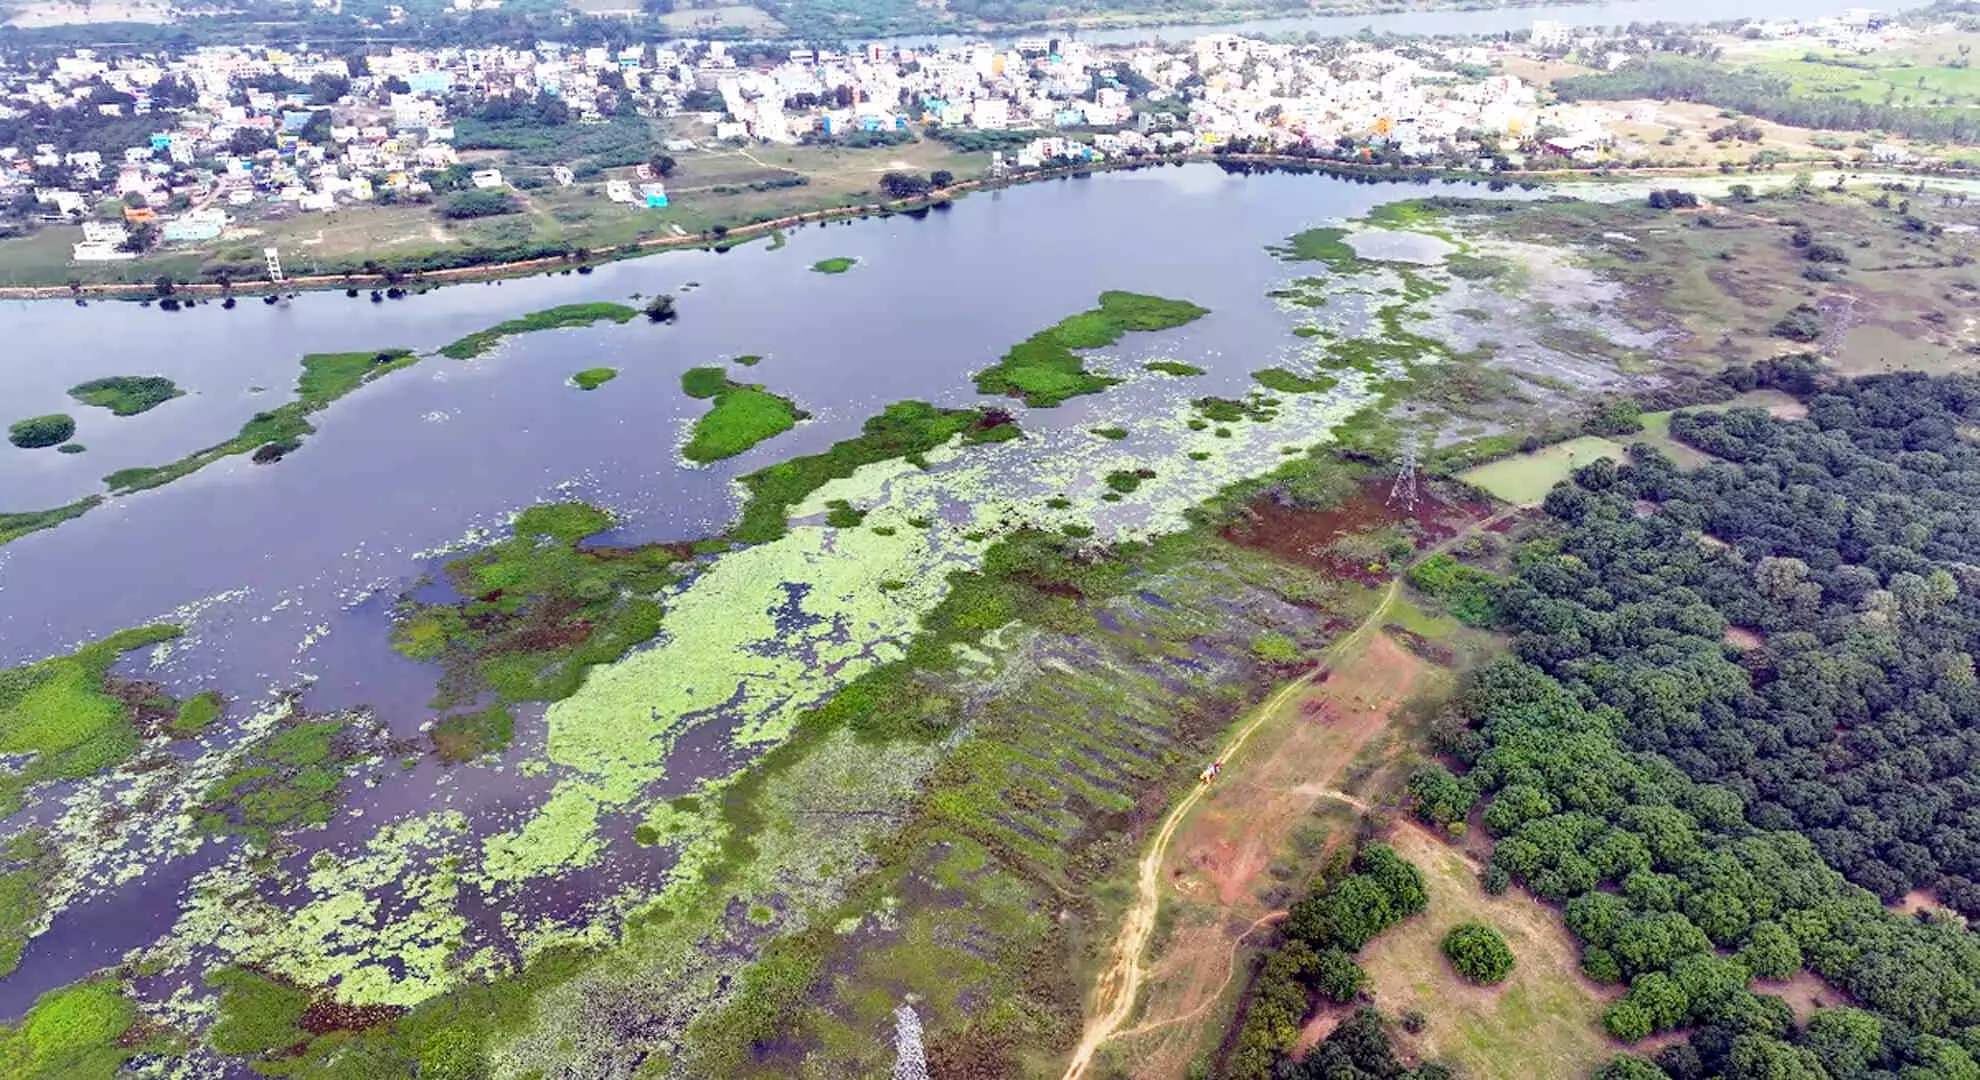 निवासियों का कहना है कि डीएमके के लोगों ने तिरुवल्लूर में वेंगथुर झील के जीर्णोद्धार का काम रोक दिया